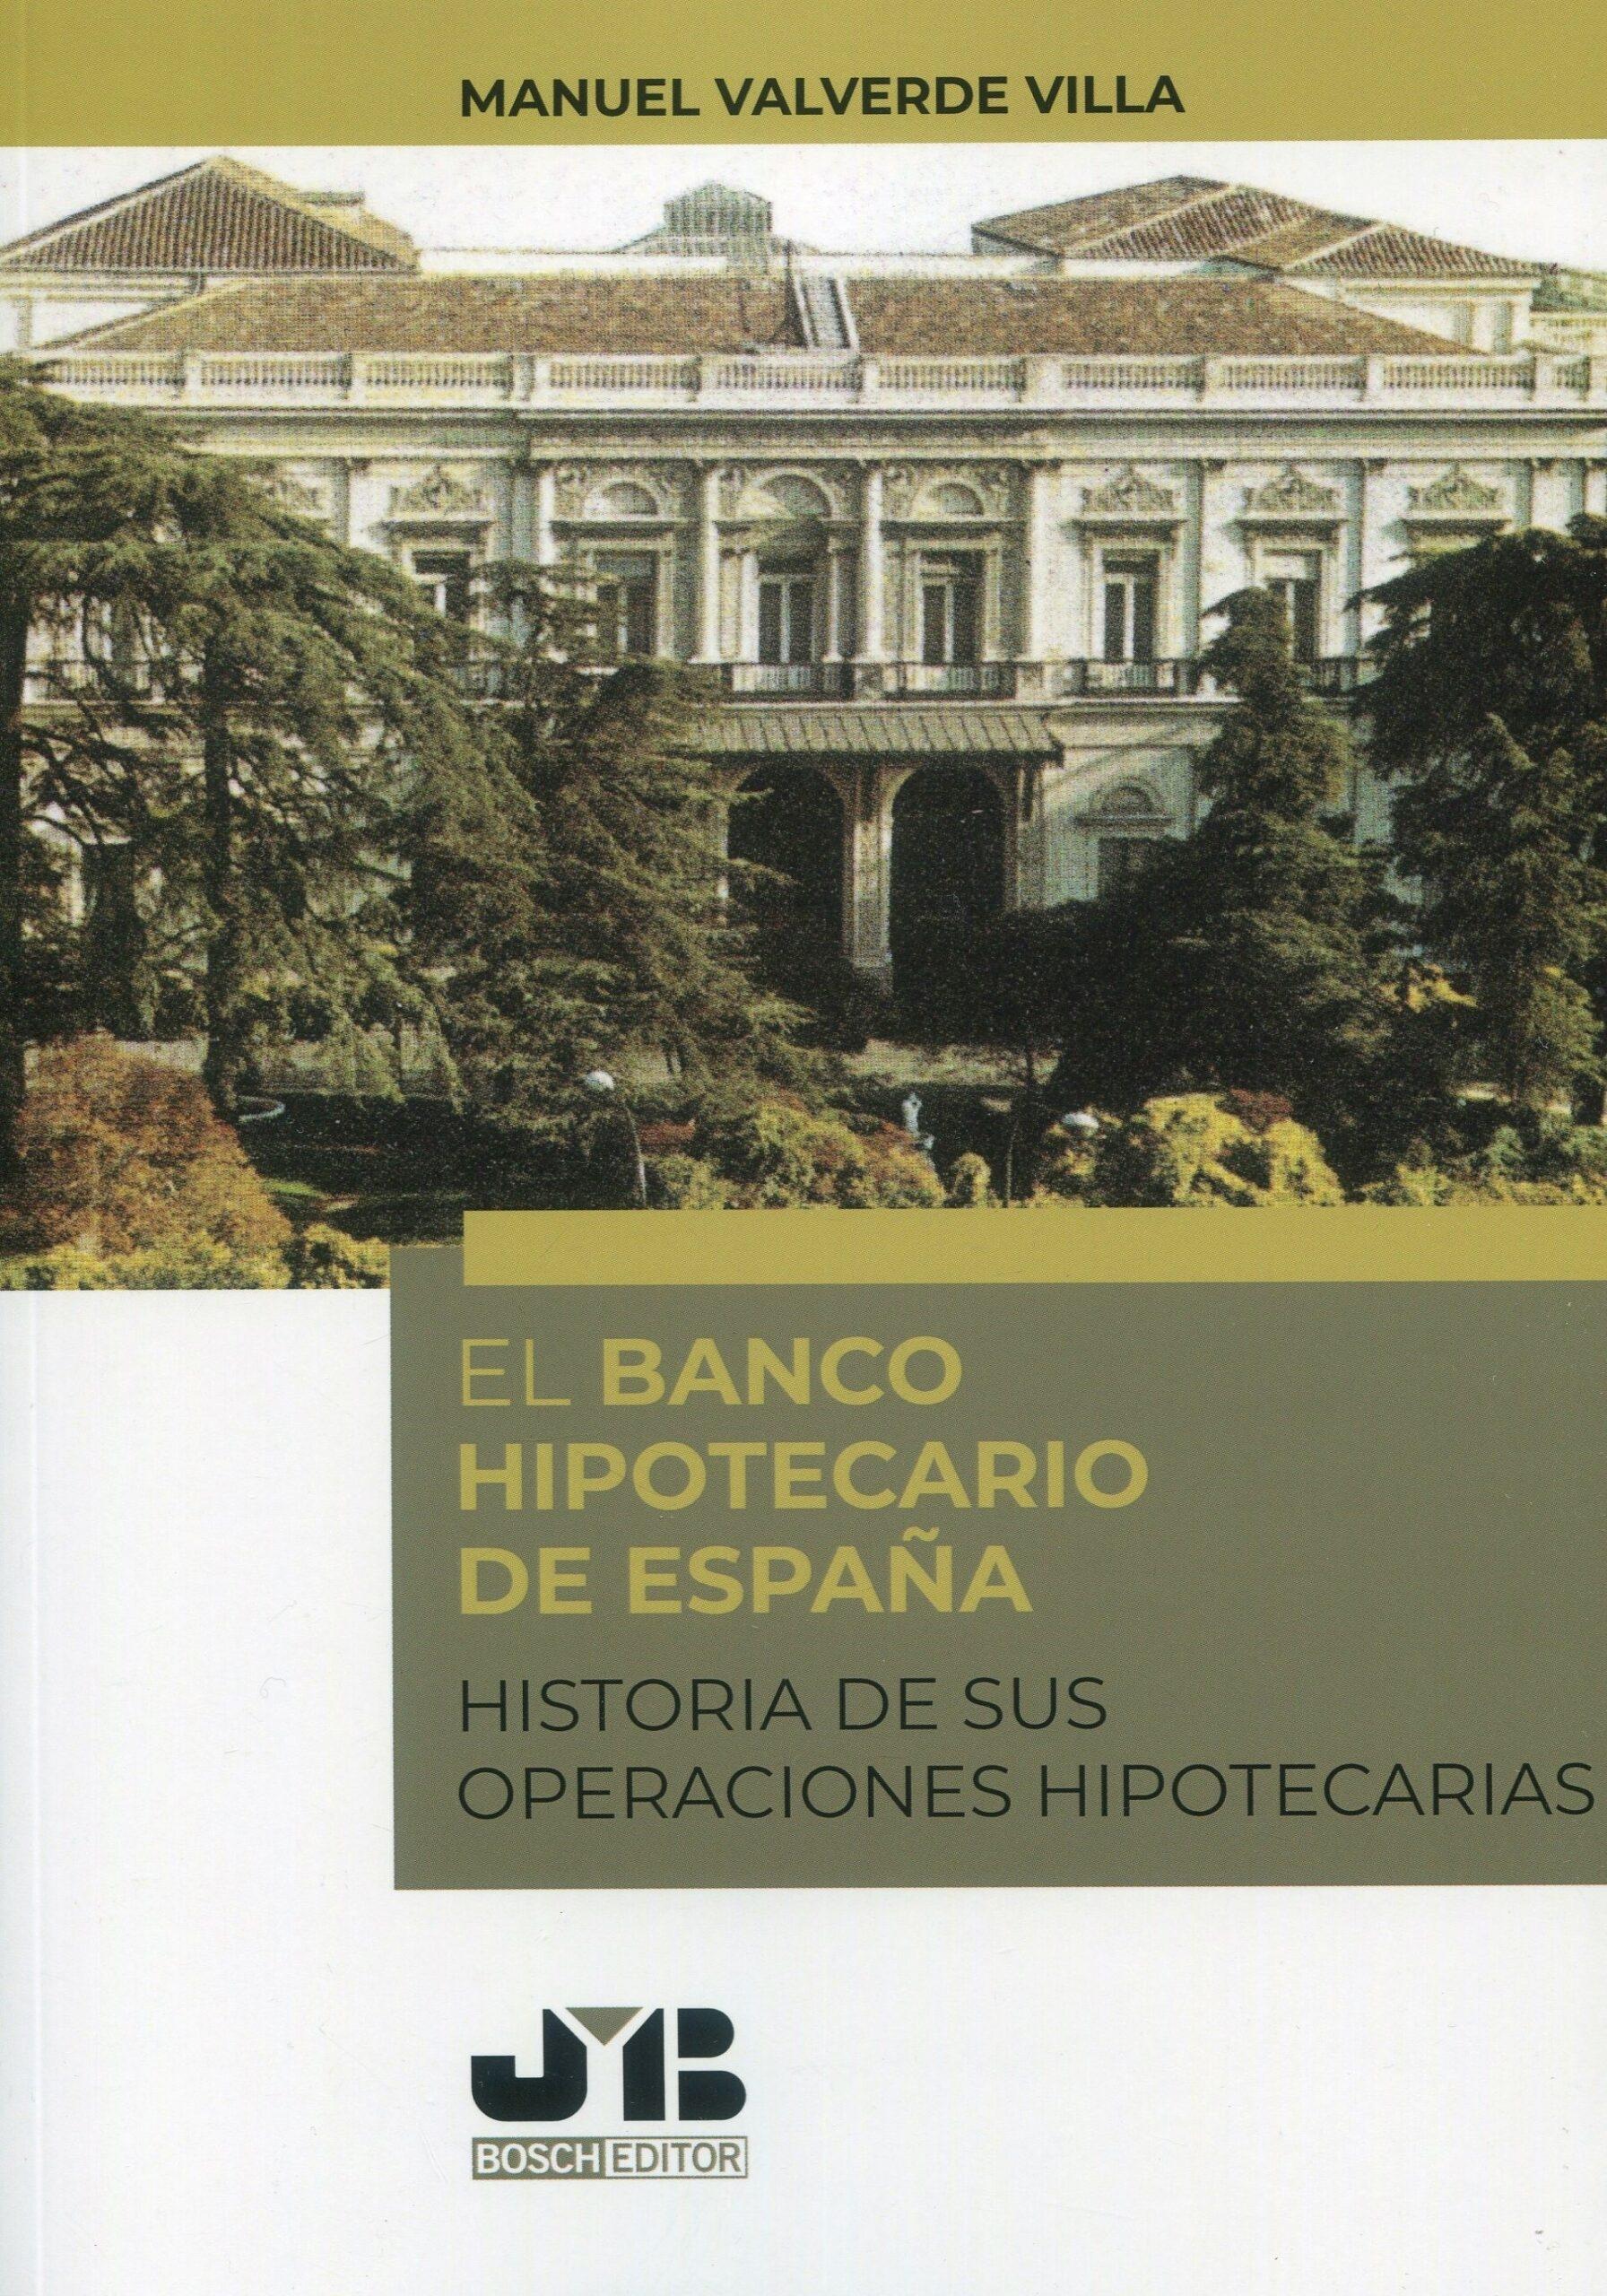 El Banco Hipotecario de España "Historia de sus operaciones hipotecarias"